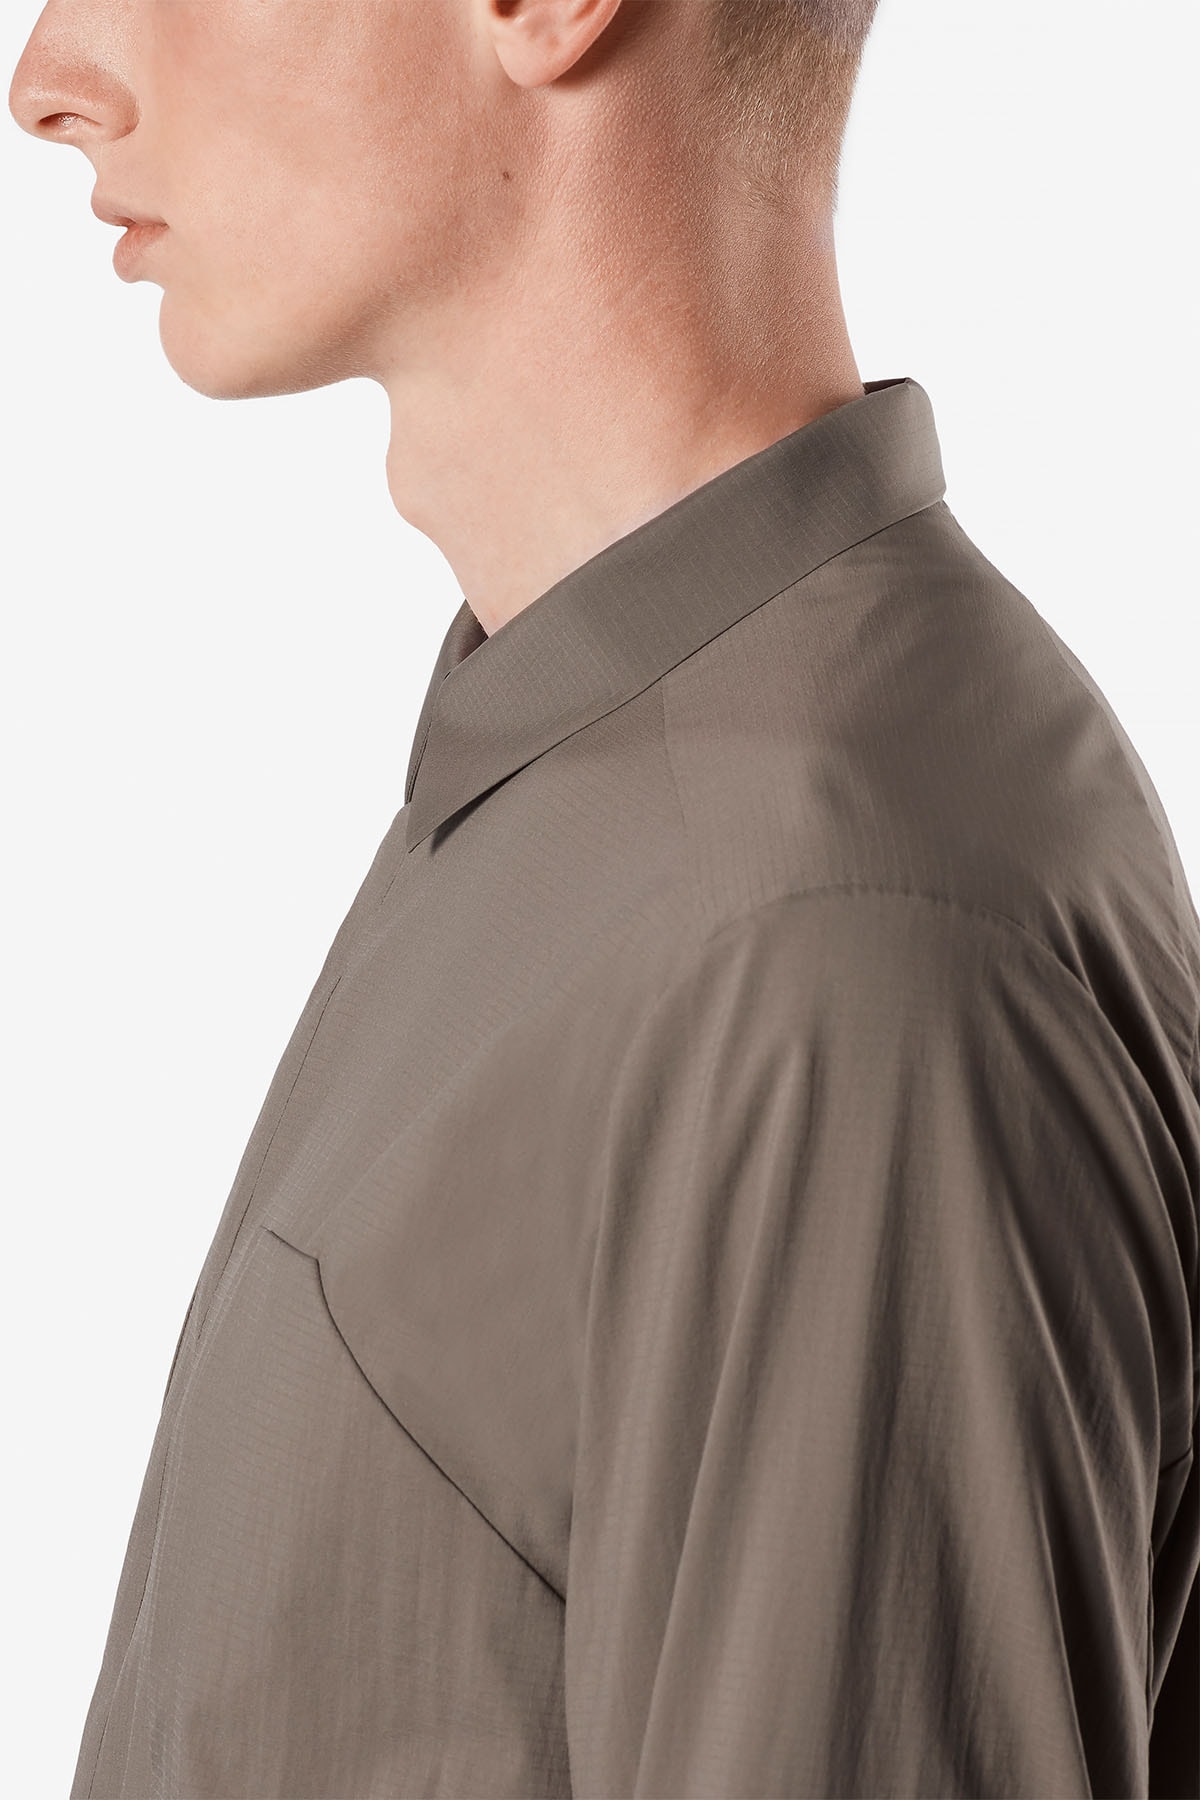 ヴェイランス VEILANCE から防風性と耐水性を備えた超軽量素材の新作コート/シャツが登場